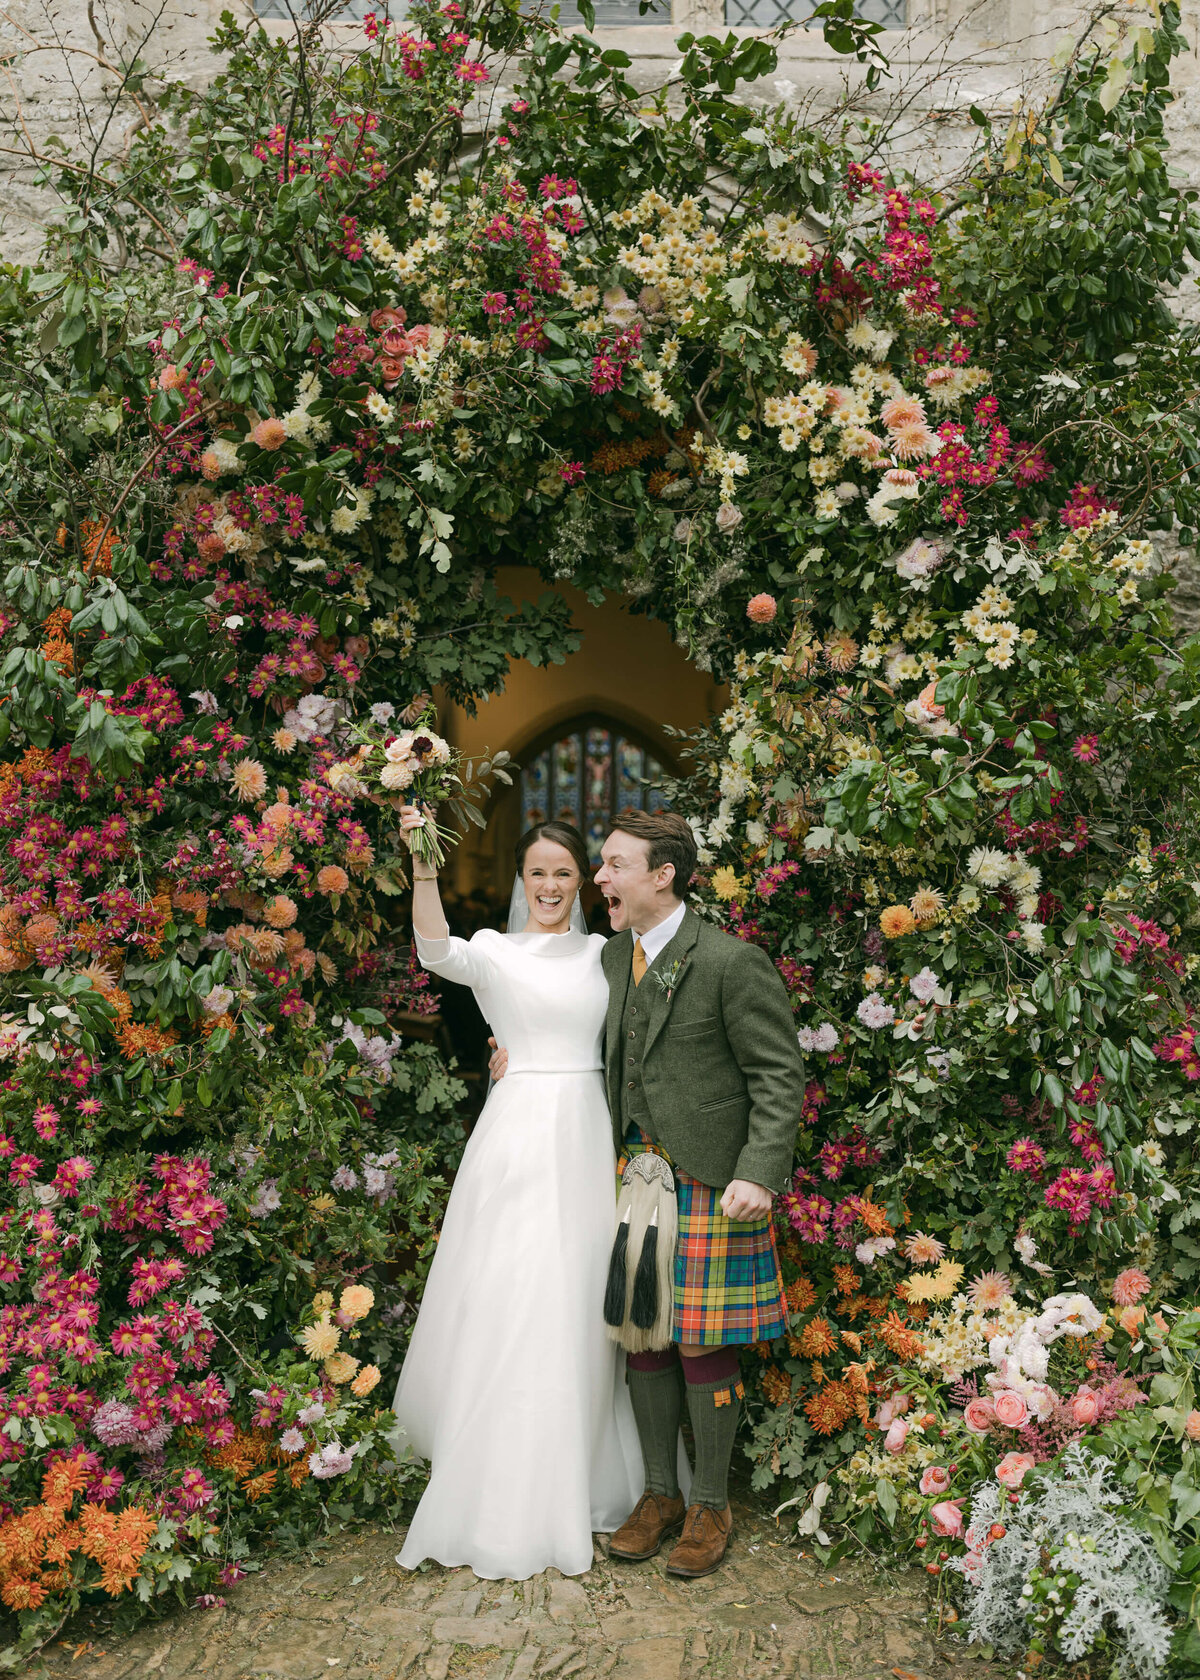 chloe-winstanley-wedding-oxford-gsp-flower-arch-suzanne-neville